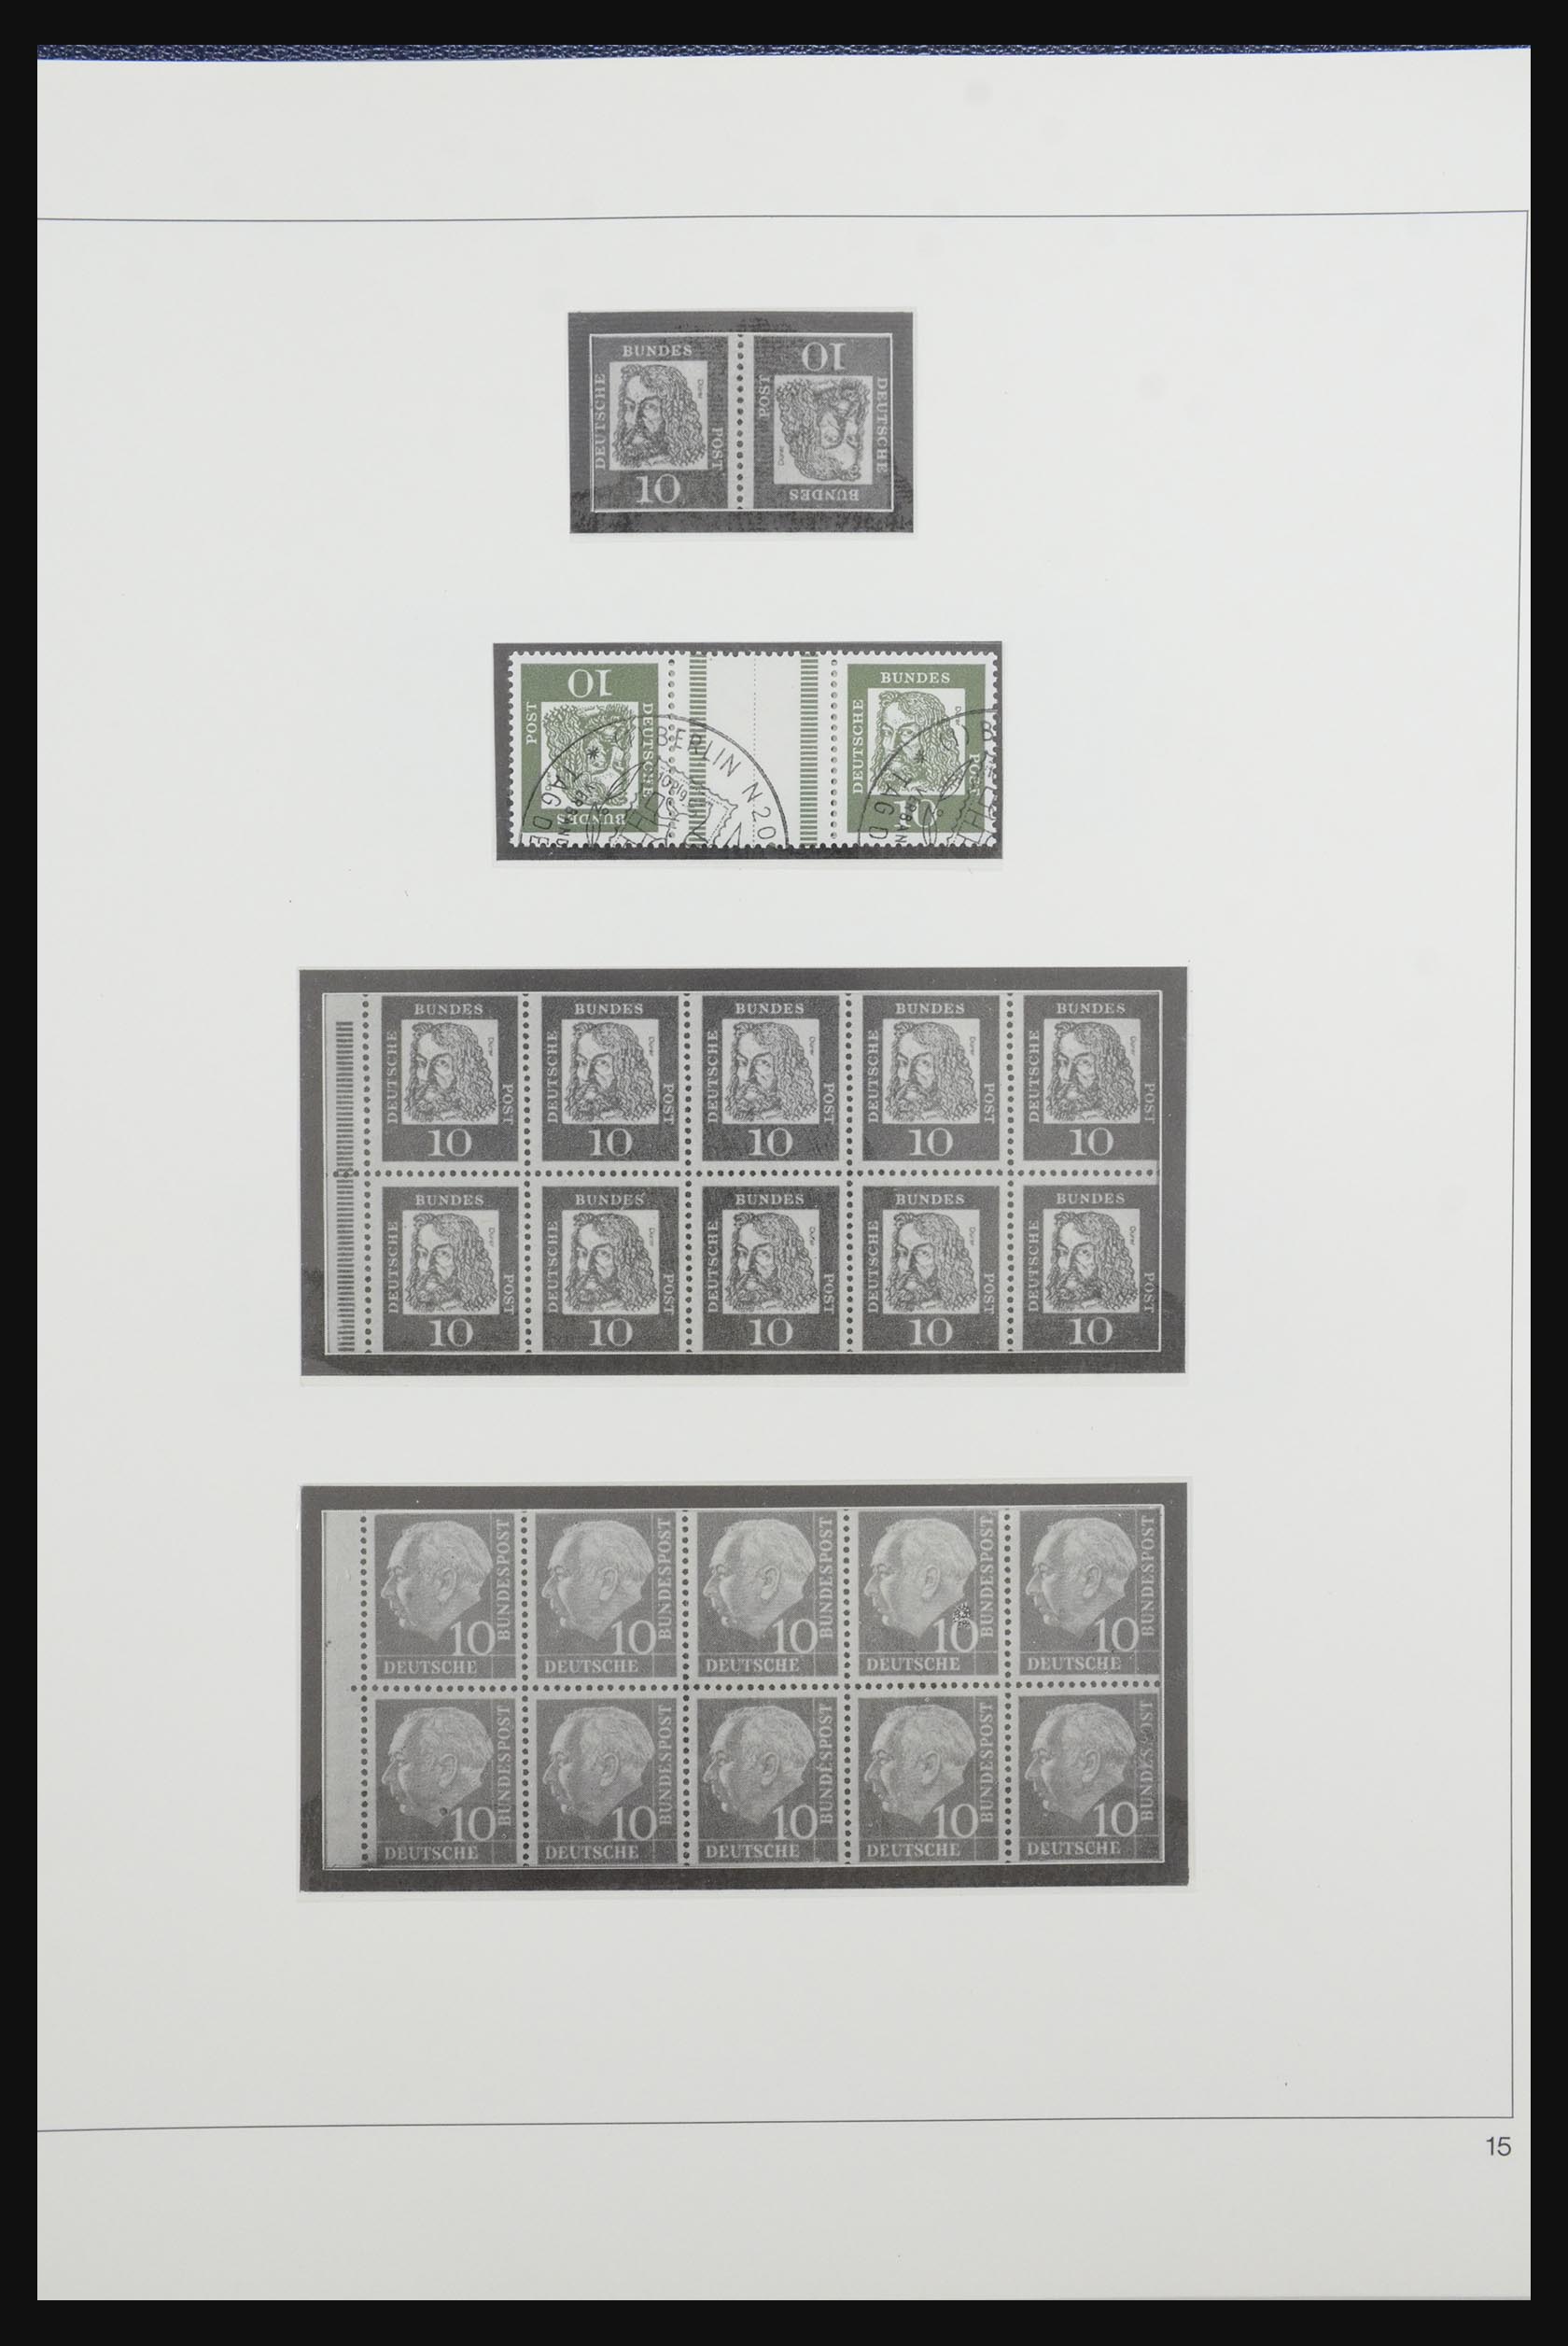 31842 019 - 31842 Bundespost combinaties 1951-2003.